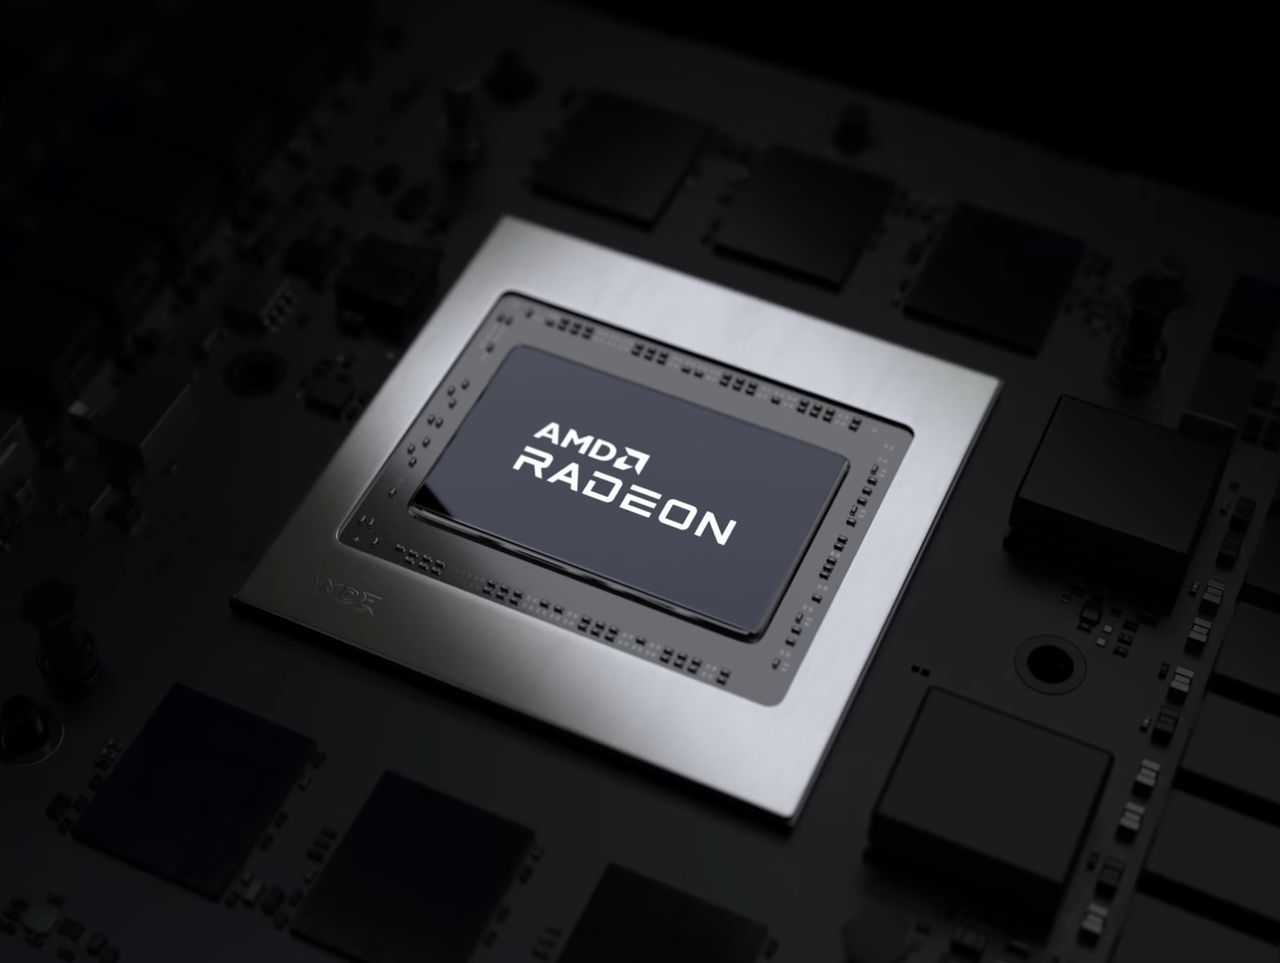 Prototypy nowych kart AMD wyprodukowane. Architektura RDNA 3 coraz bliżej